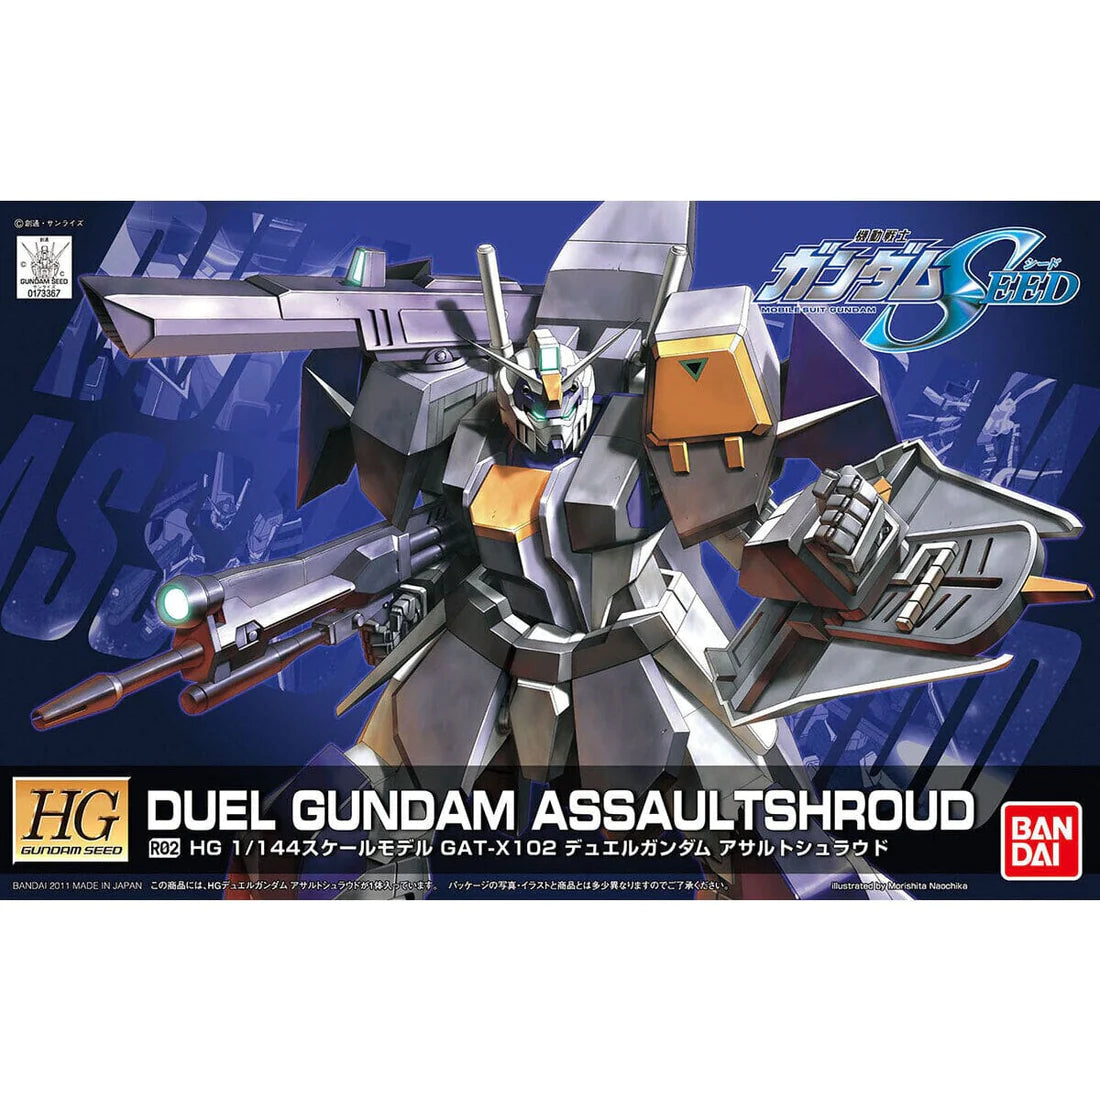 HGSEED R02 GAT-X102 Duel Gundam Assault Shroud